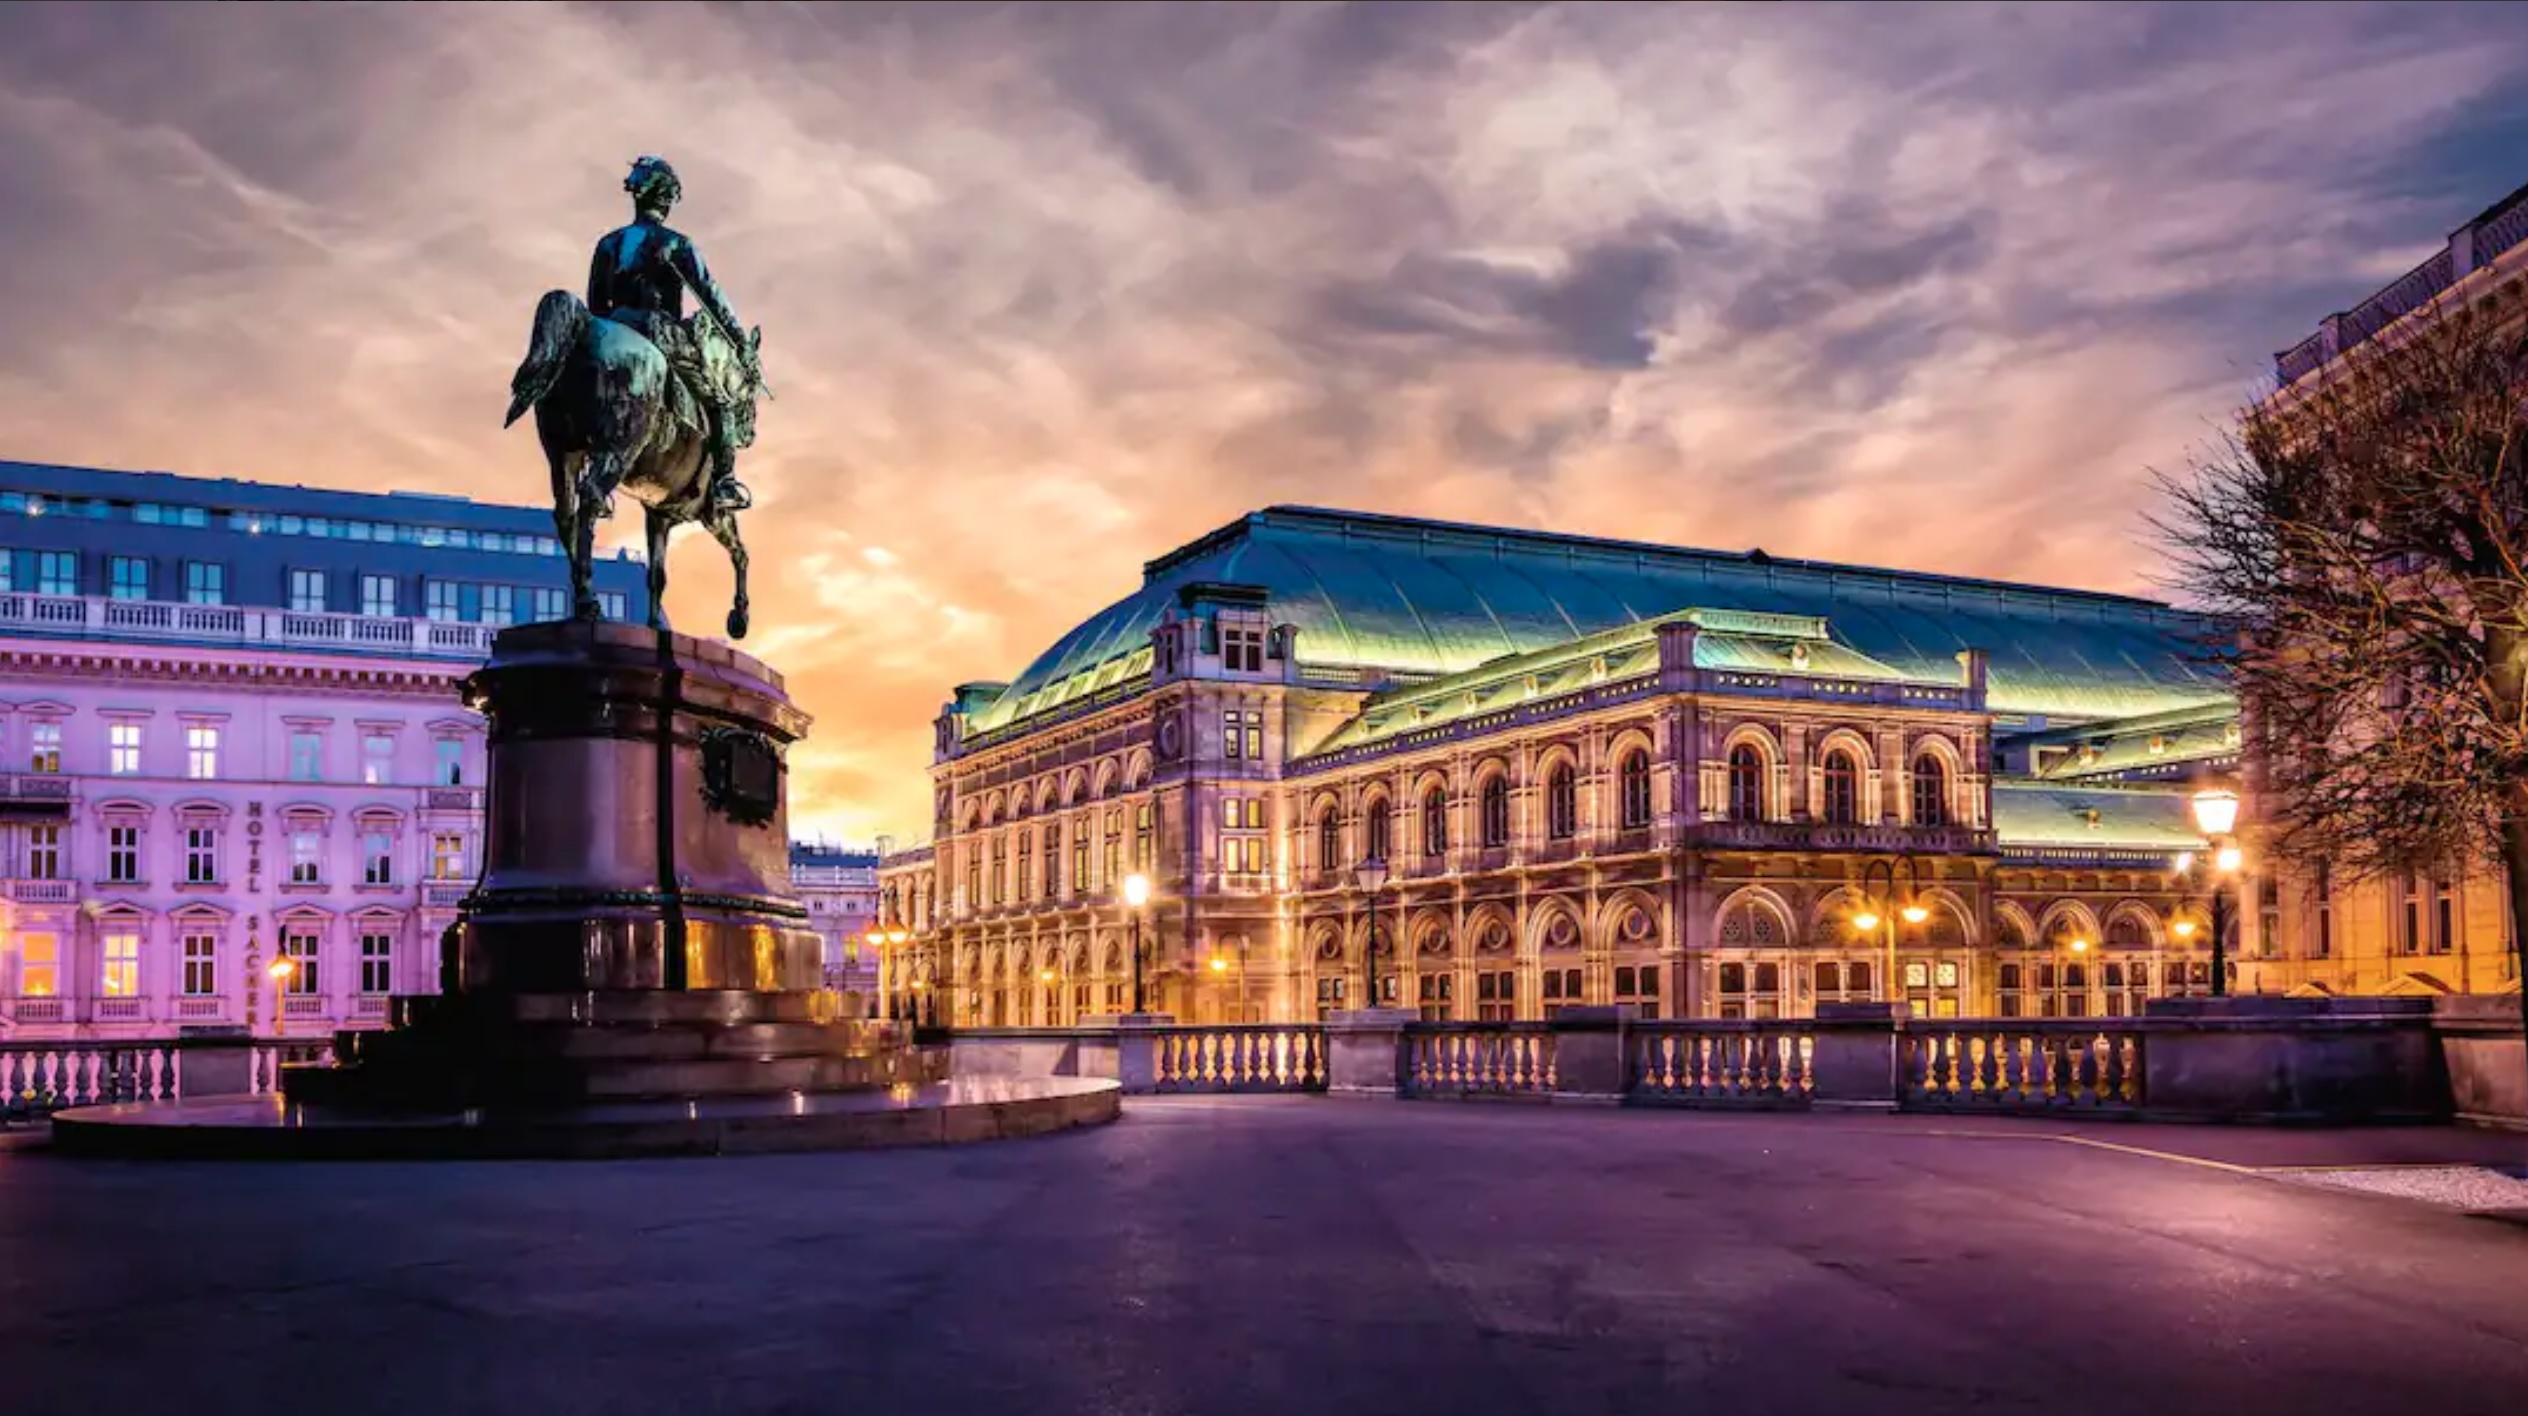 Vienna State Opera, Austria